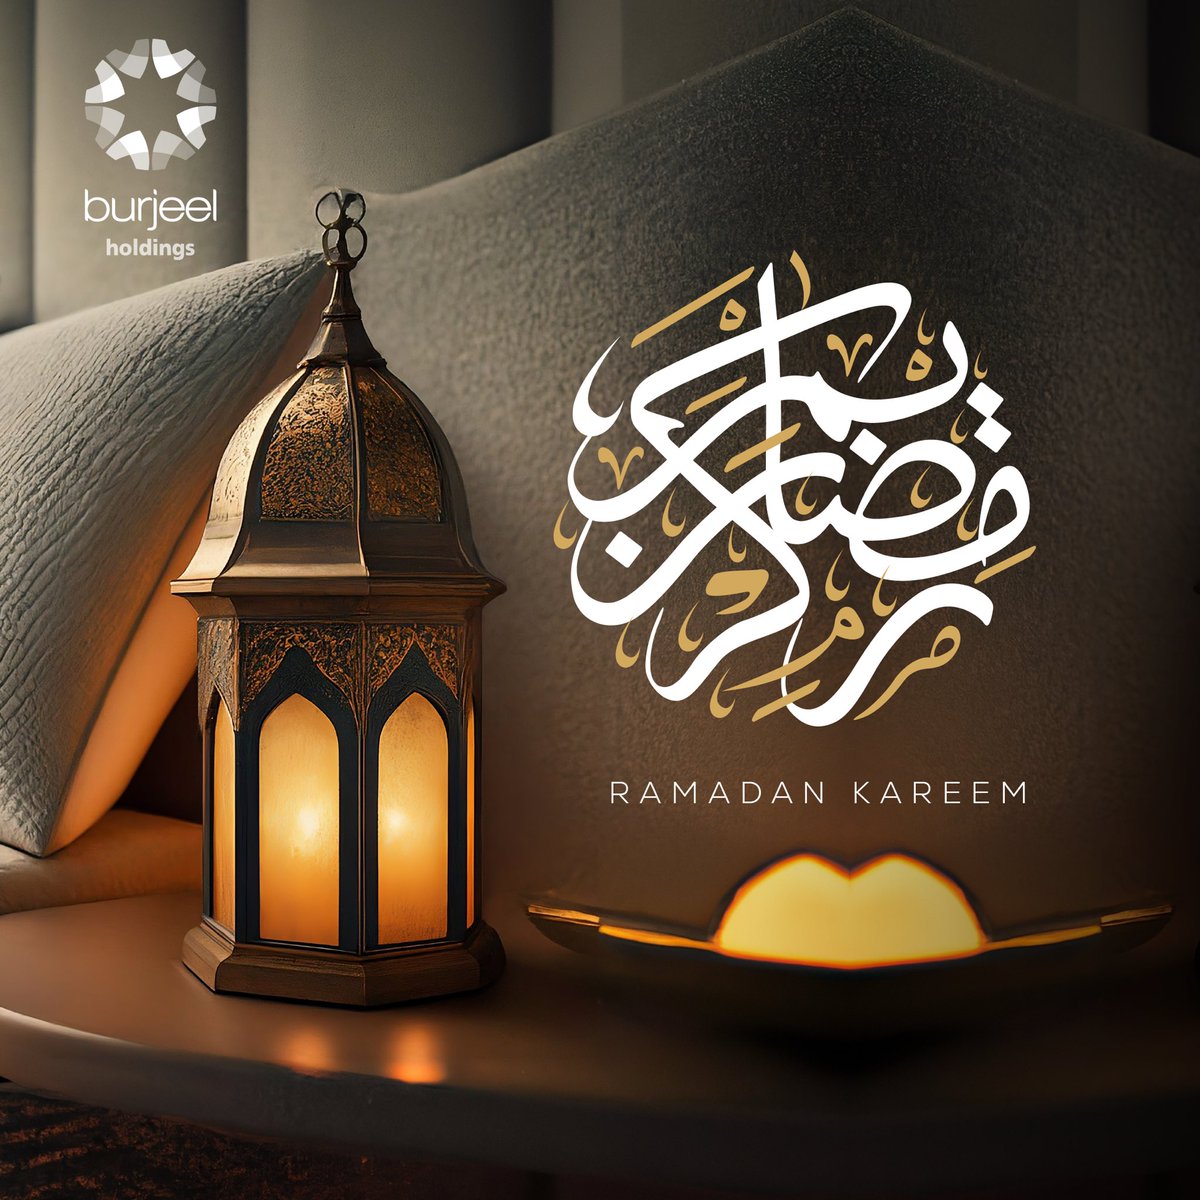 Wishing you a blessed Ramadan! May this holy month be filled with peace and joy. #BurjeelHoldings #RamadanKareem نهنئكم بحلول شهر رمضان المبارك، ونتمنى لكم الصحة والسعادة والسلام، ونسأل الله أن يجعله شهر خير وبركة، وكل وعام وأنتم بخير.   #برجيل_القابضة #رمضان_كريم